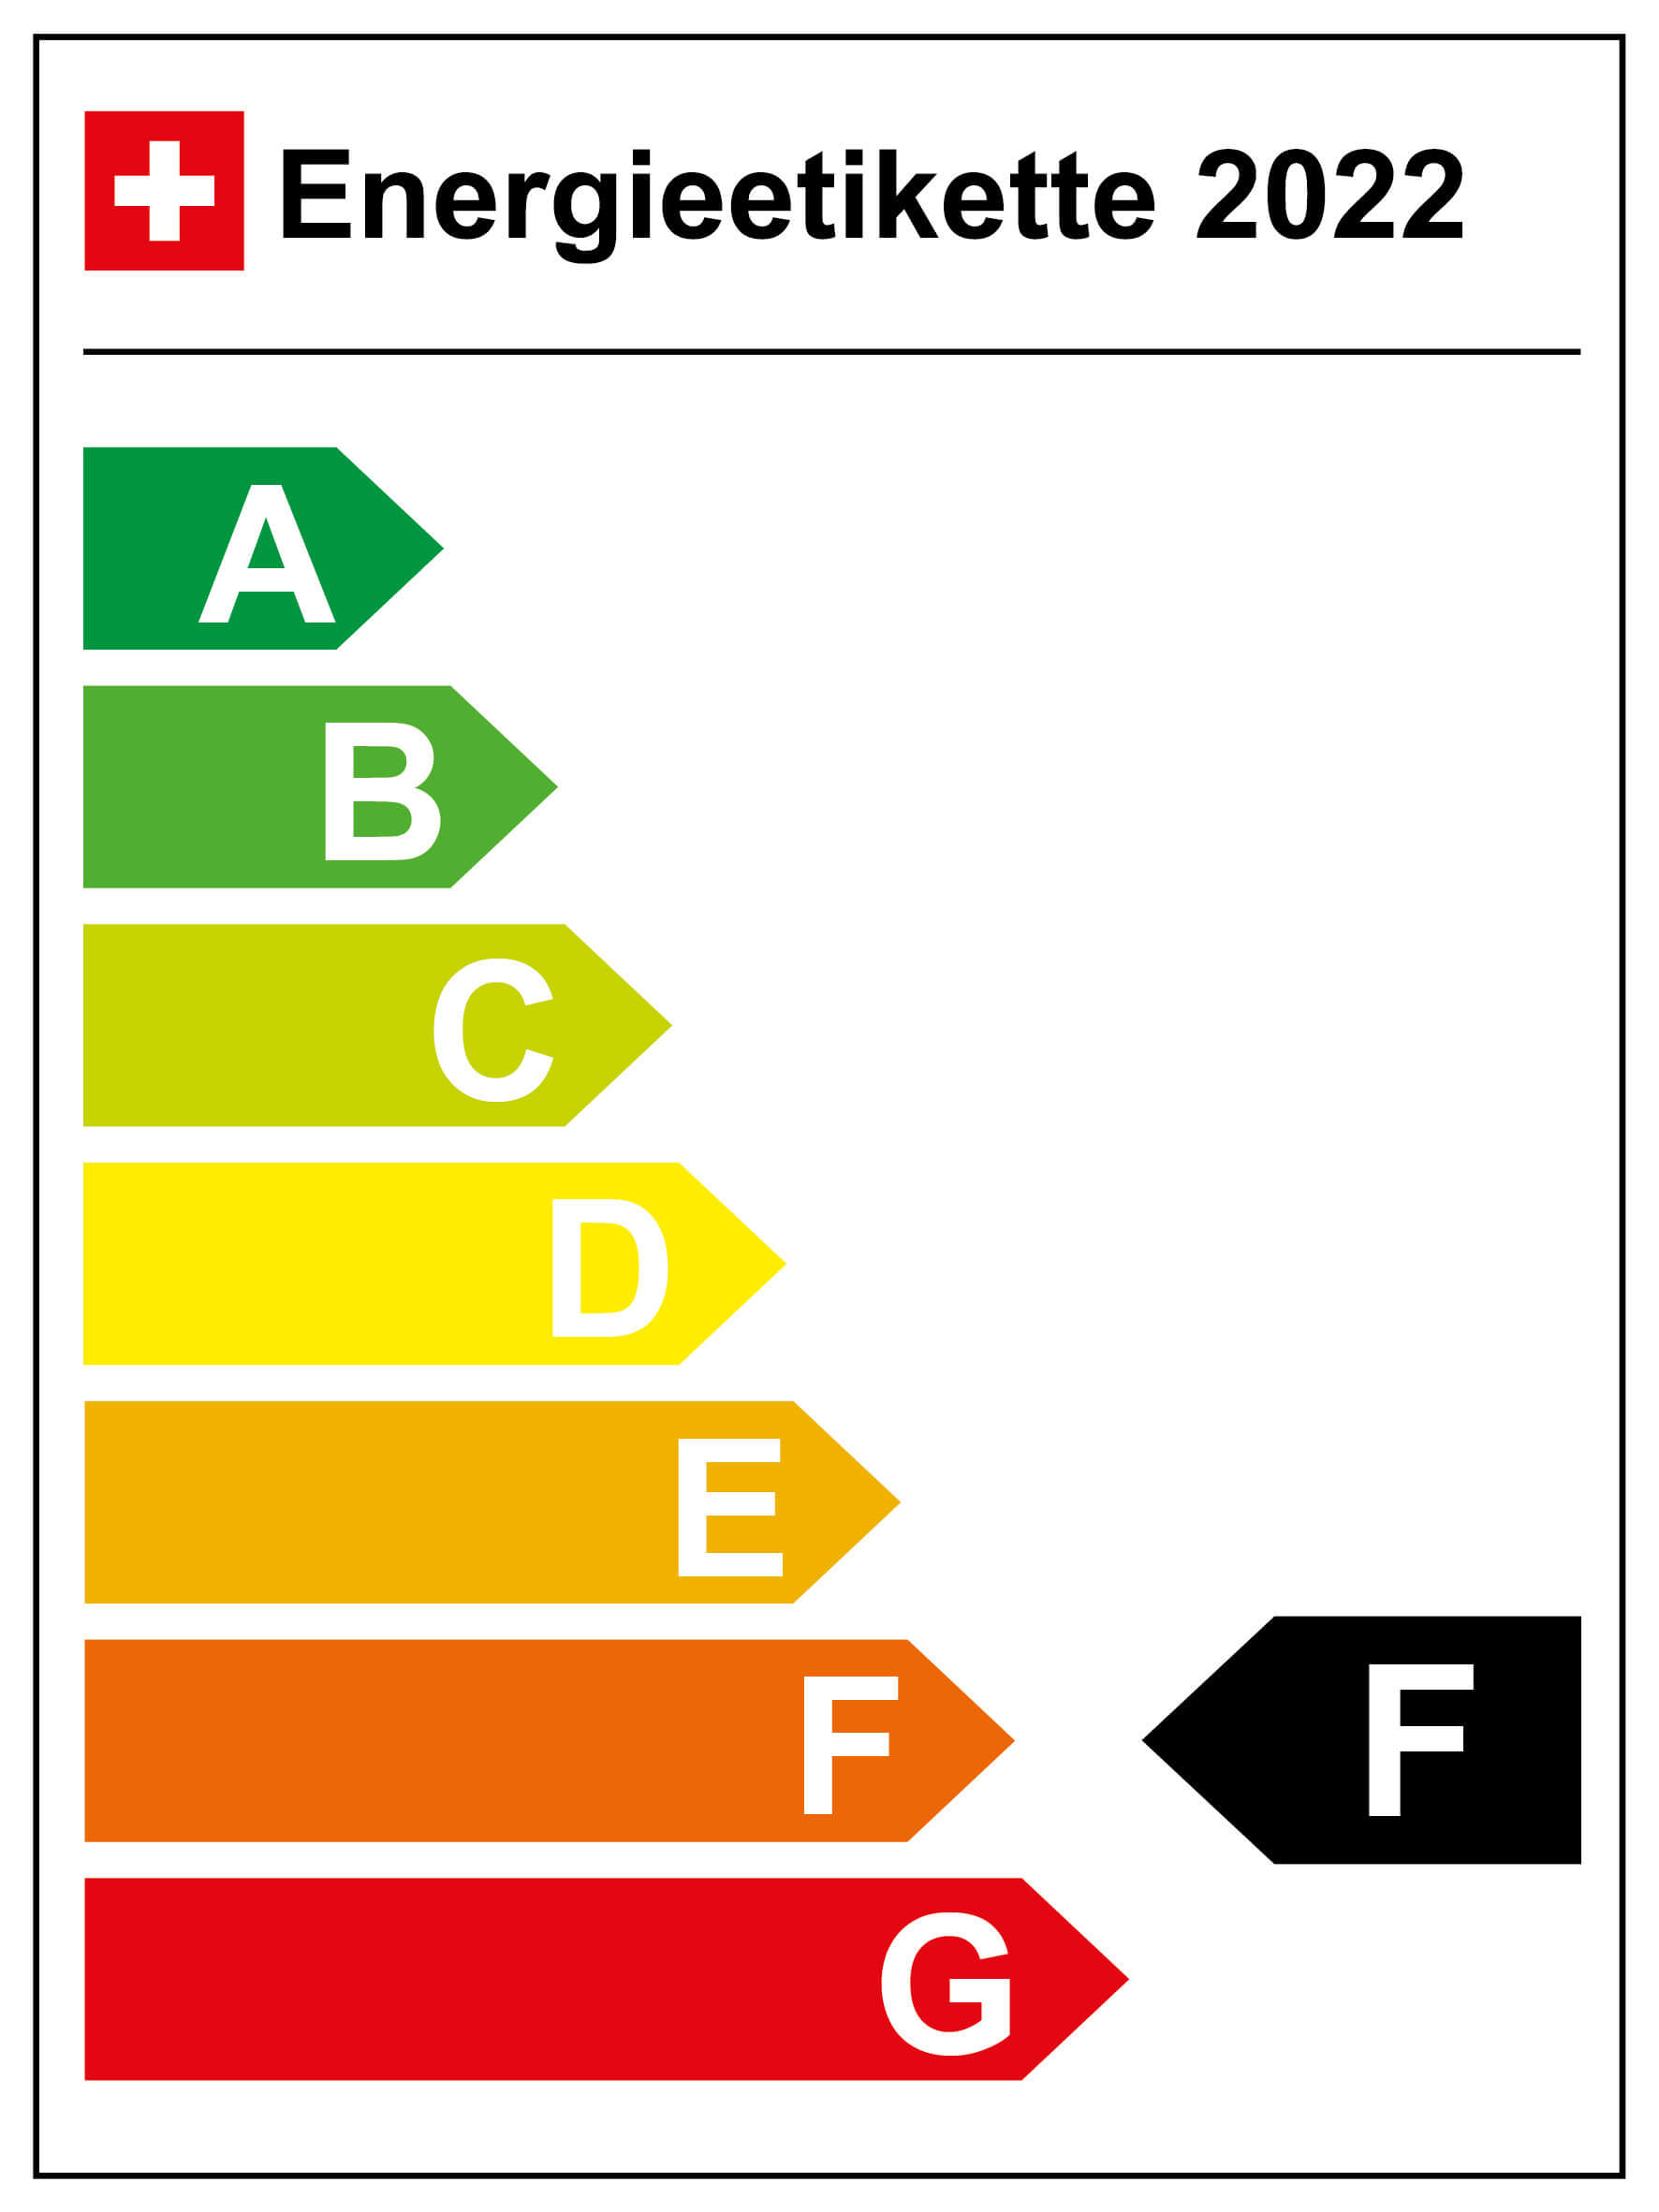 Energieeffizienz-Kategorie: F